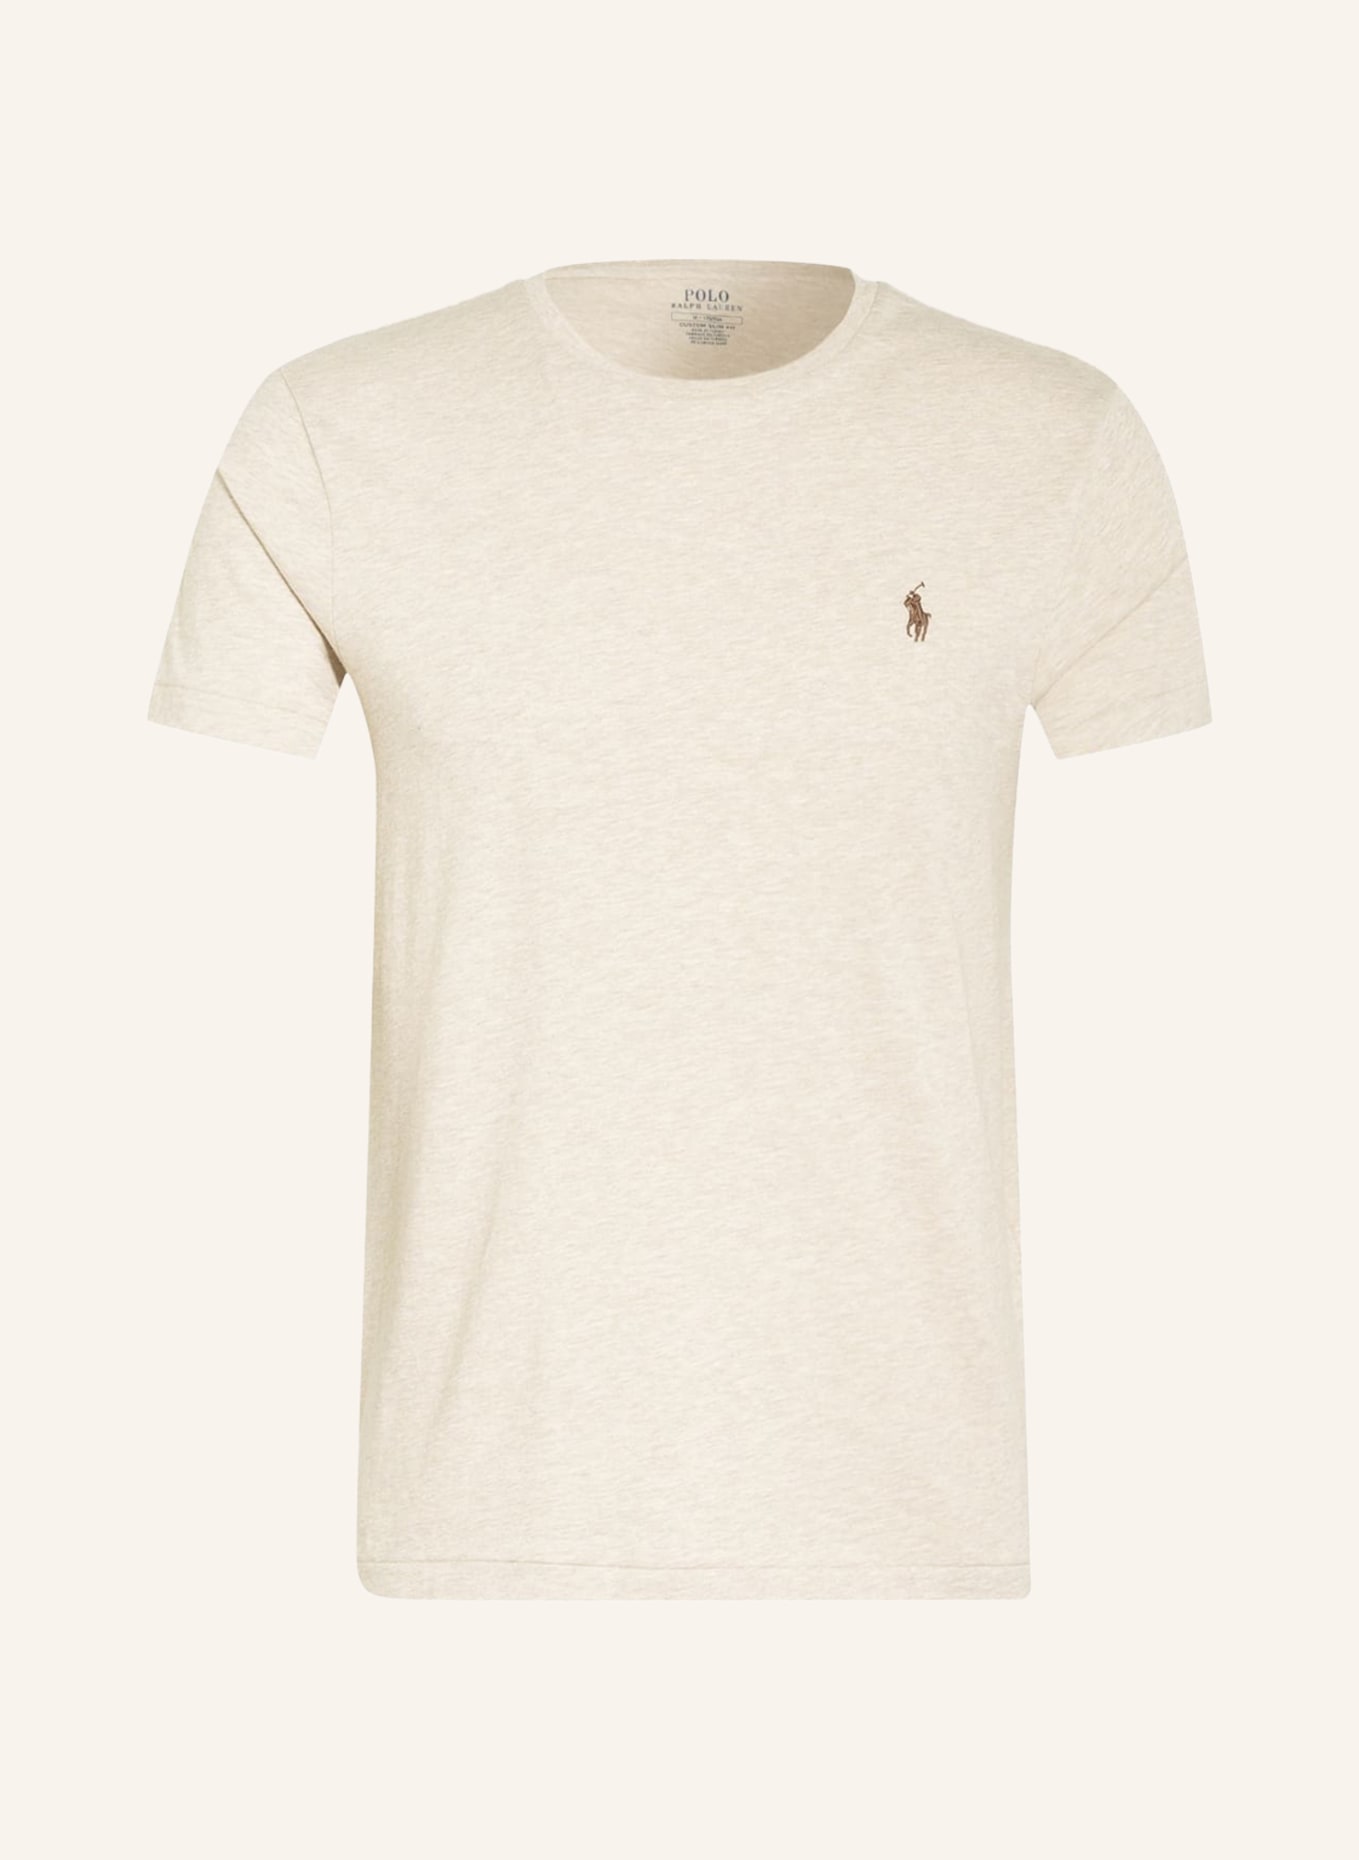 POLO RALPH LAUREN T-shirt, Color: BEIGE (Image 1)